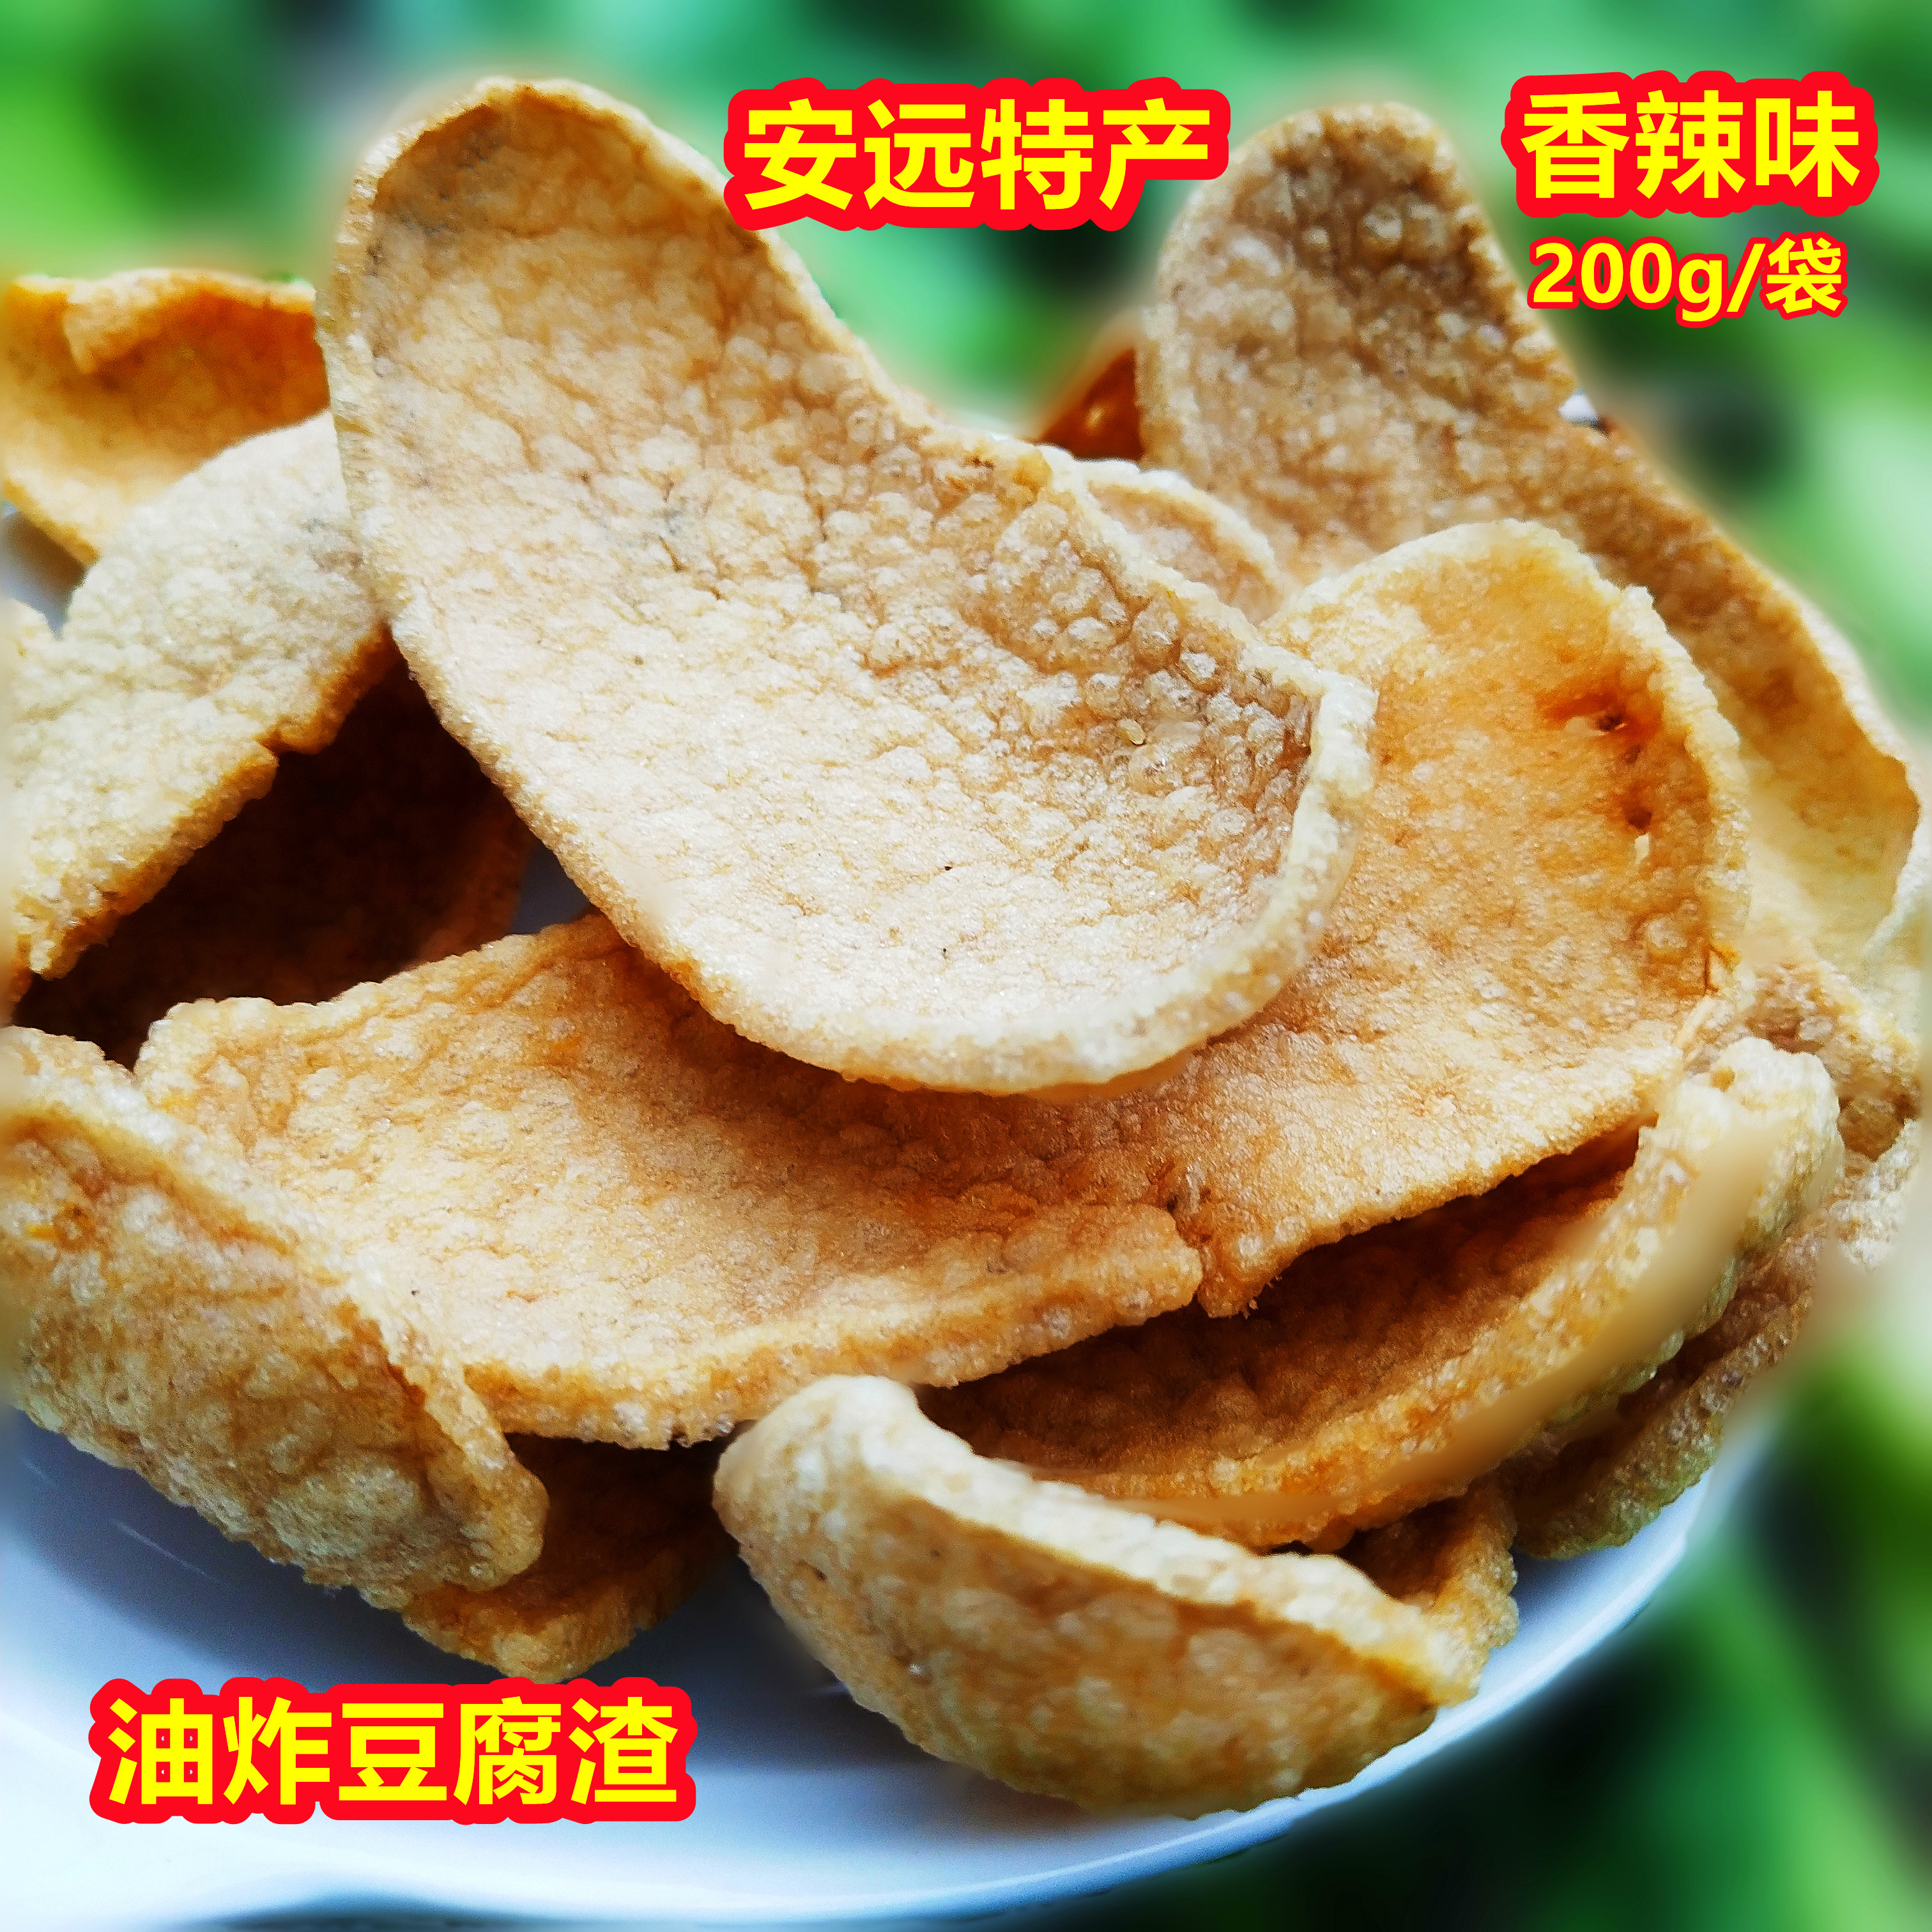 安远豆腐渣香辣脆小零食农产品江西赣州特产网红小吃休闲怀旧美食